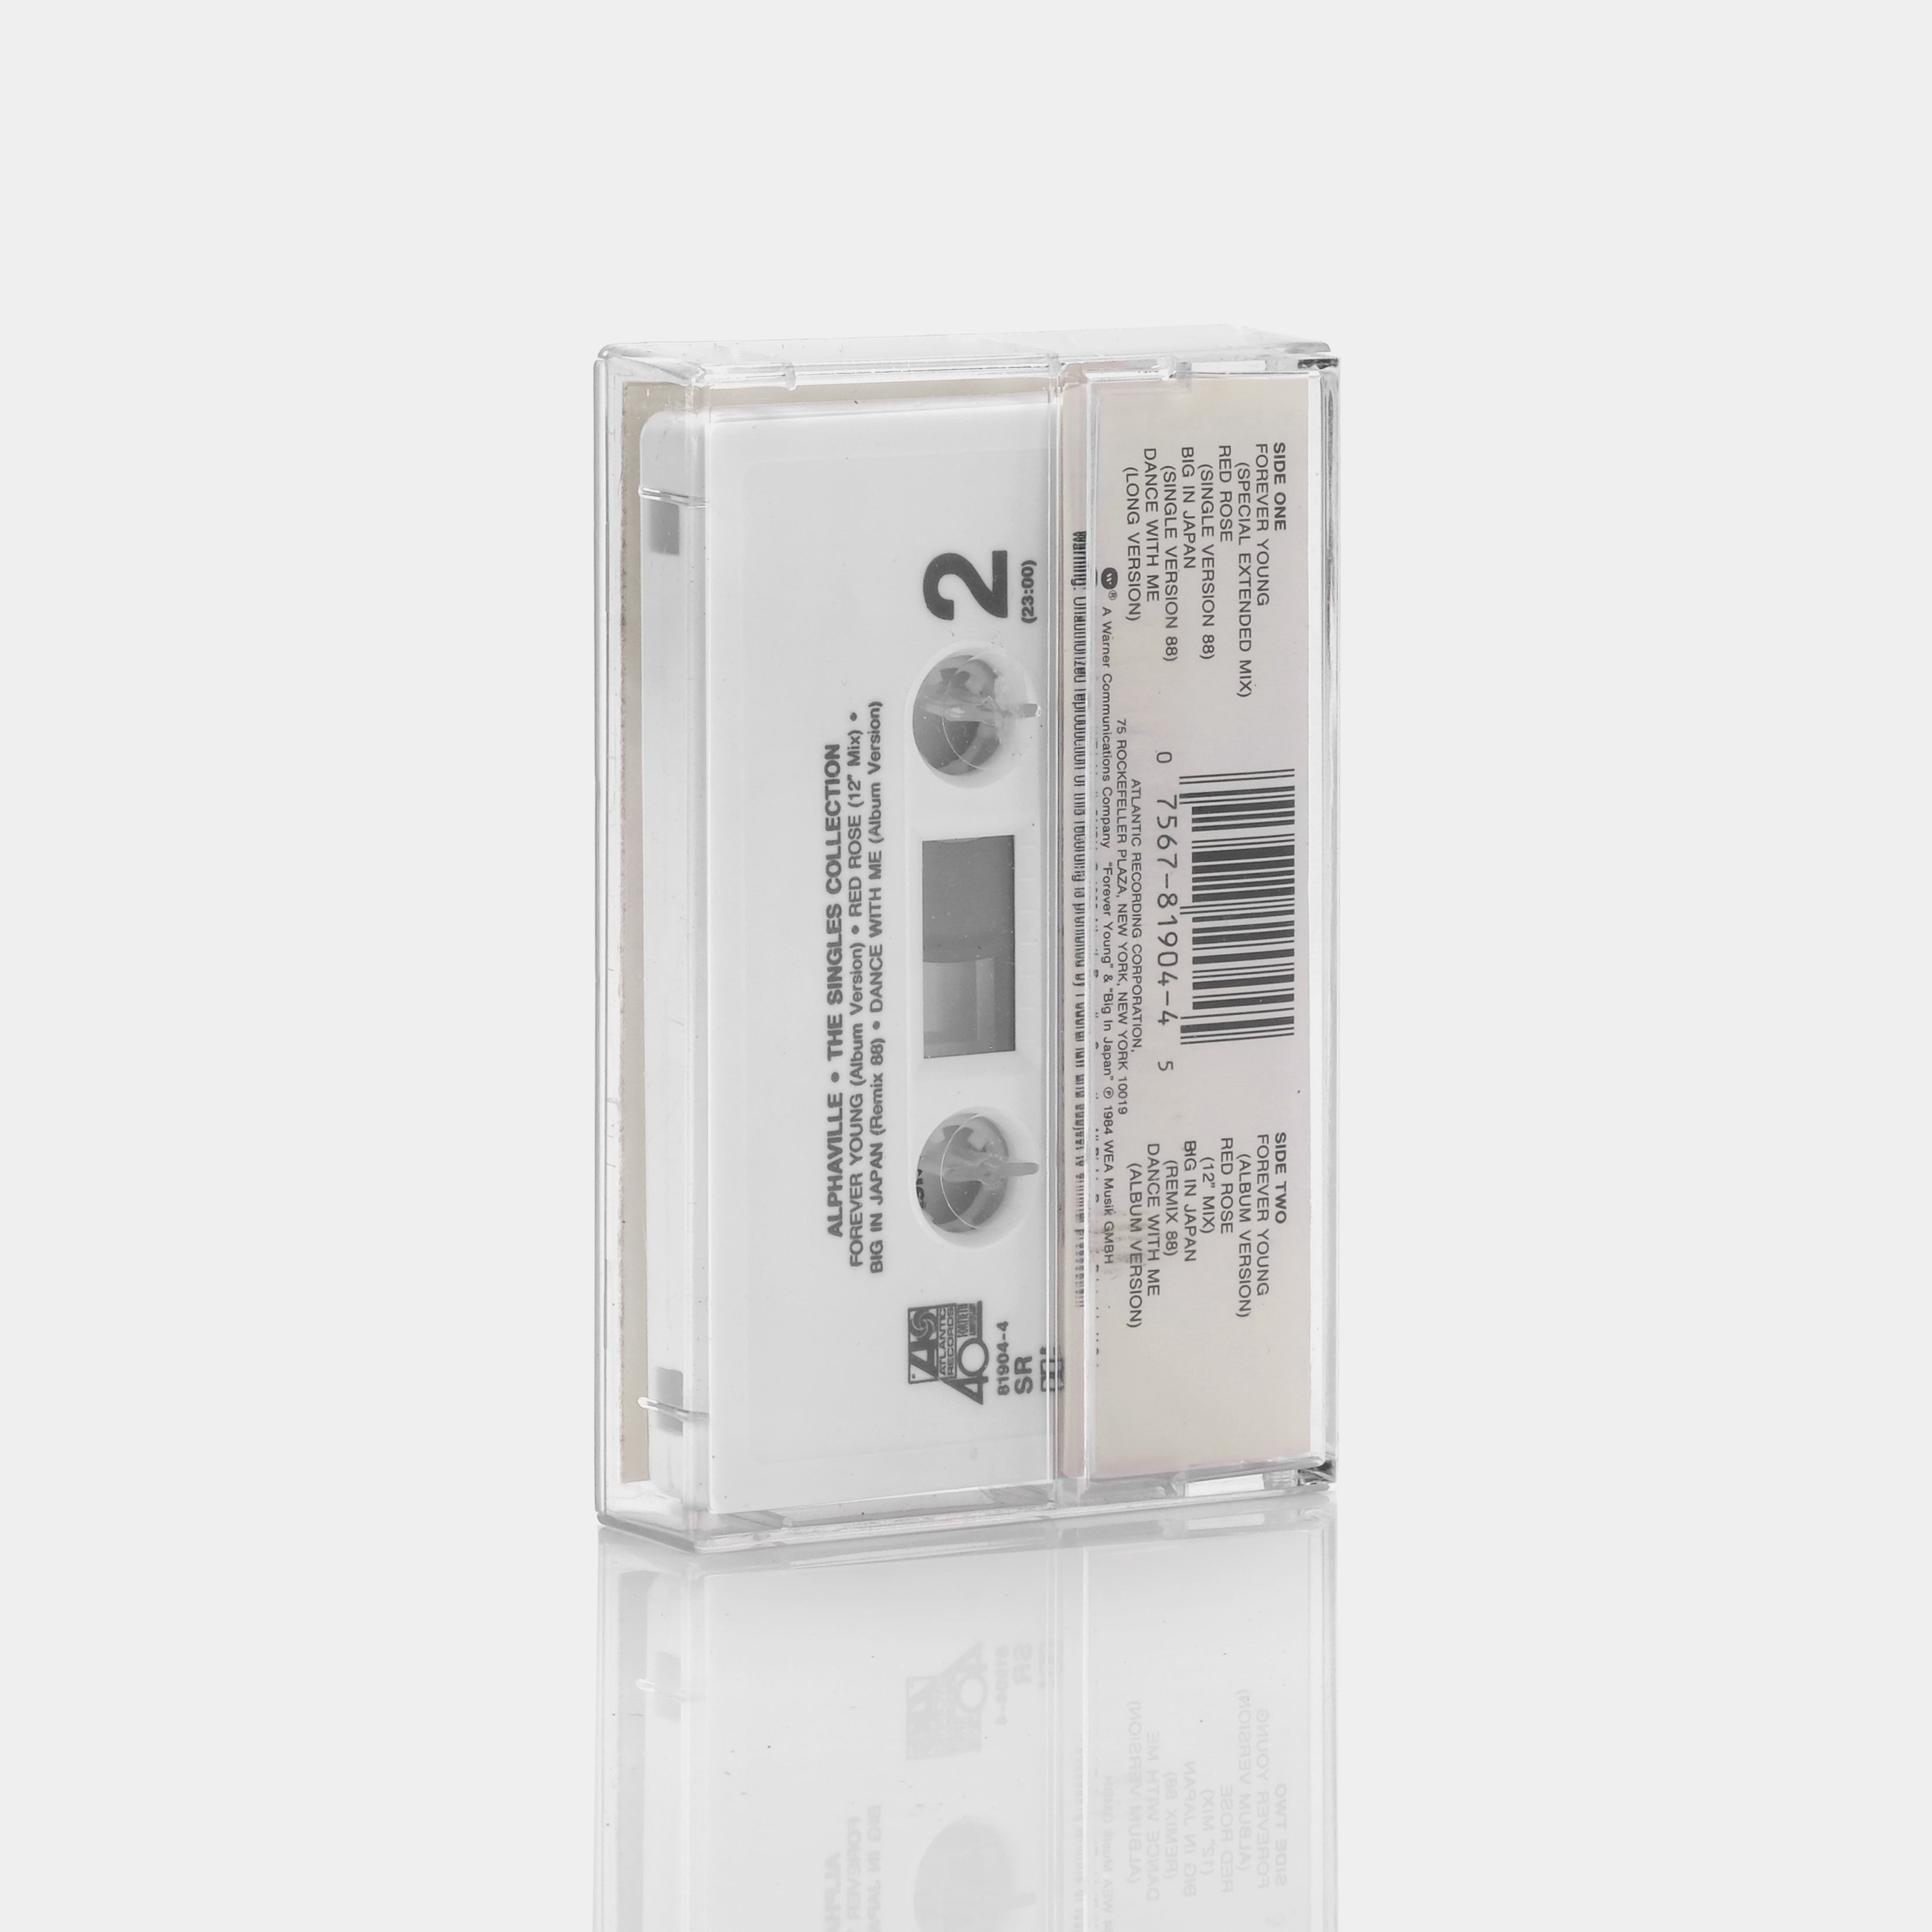 Alphaville - The Singles Collection Cassette Tape